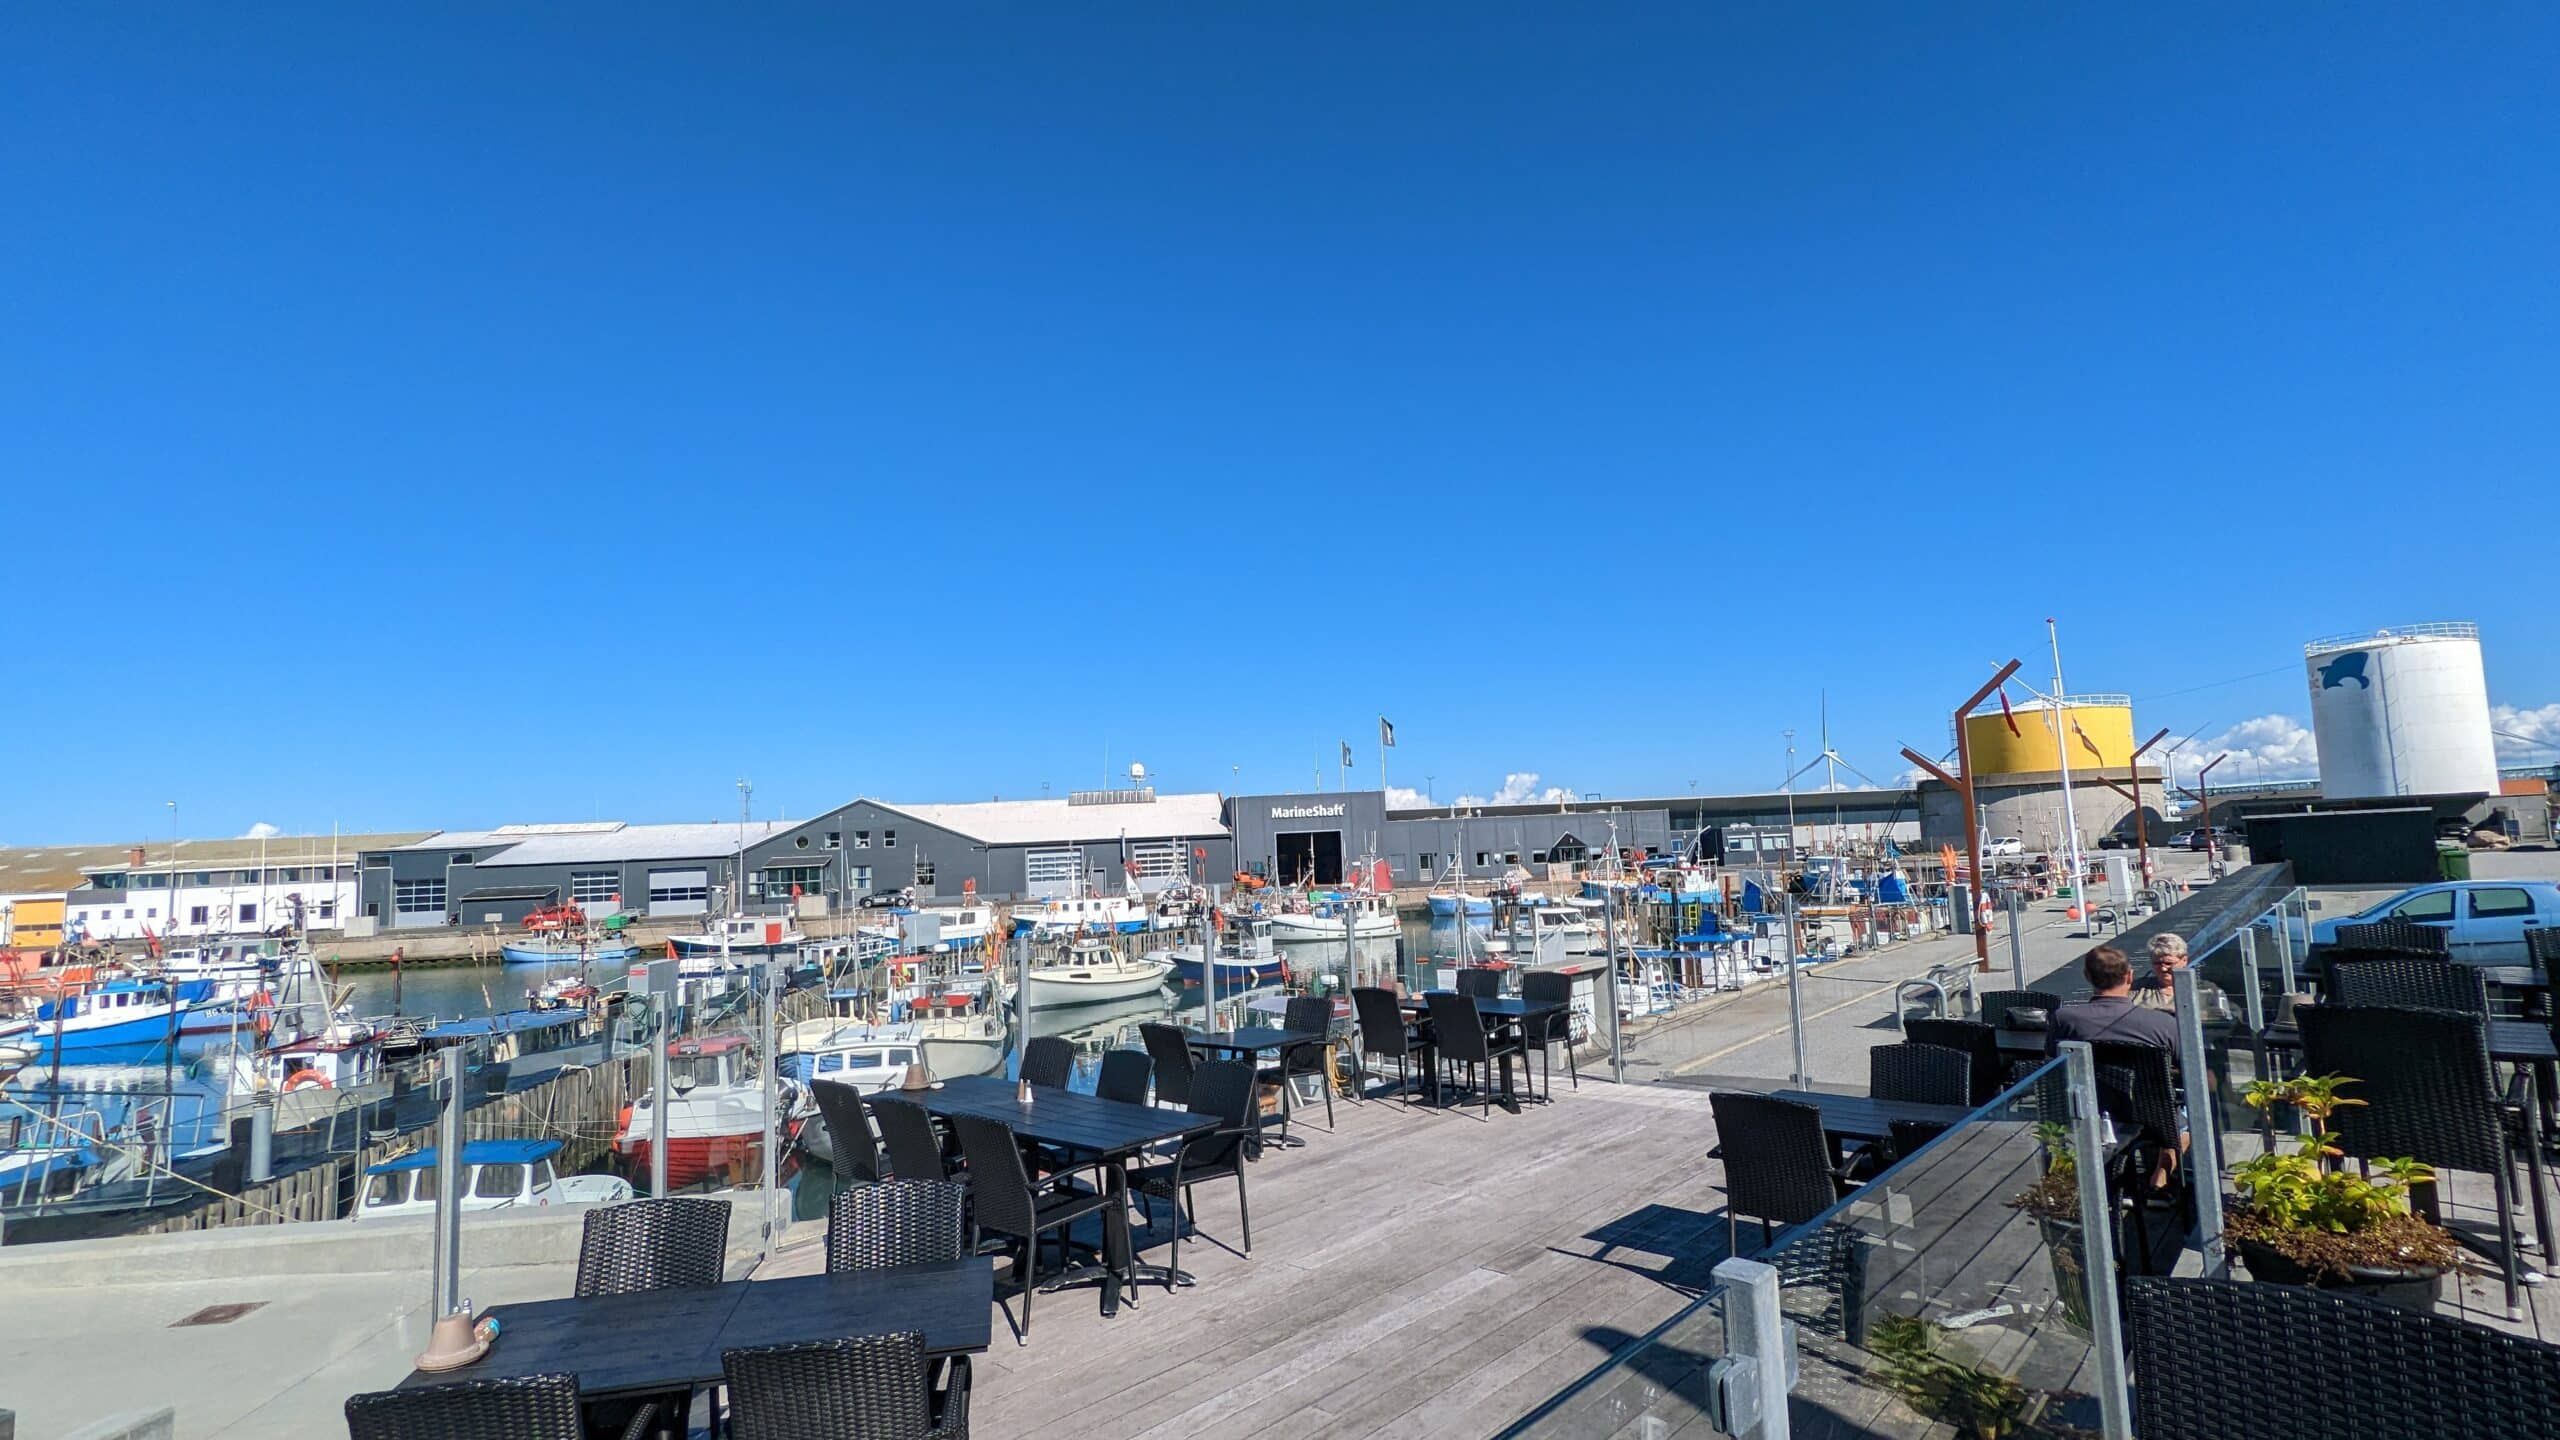 Ein Restaurant mit Tischen und Stühlen mit Blick auf einen Yachthafen.